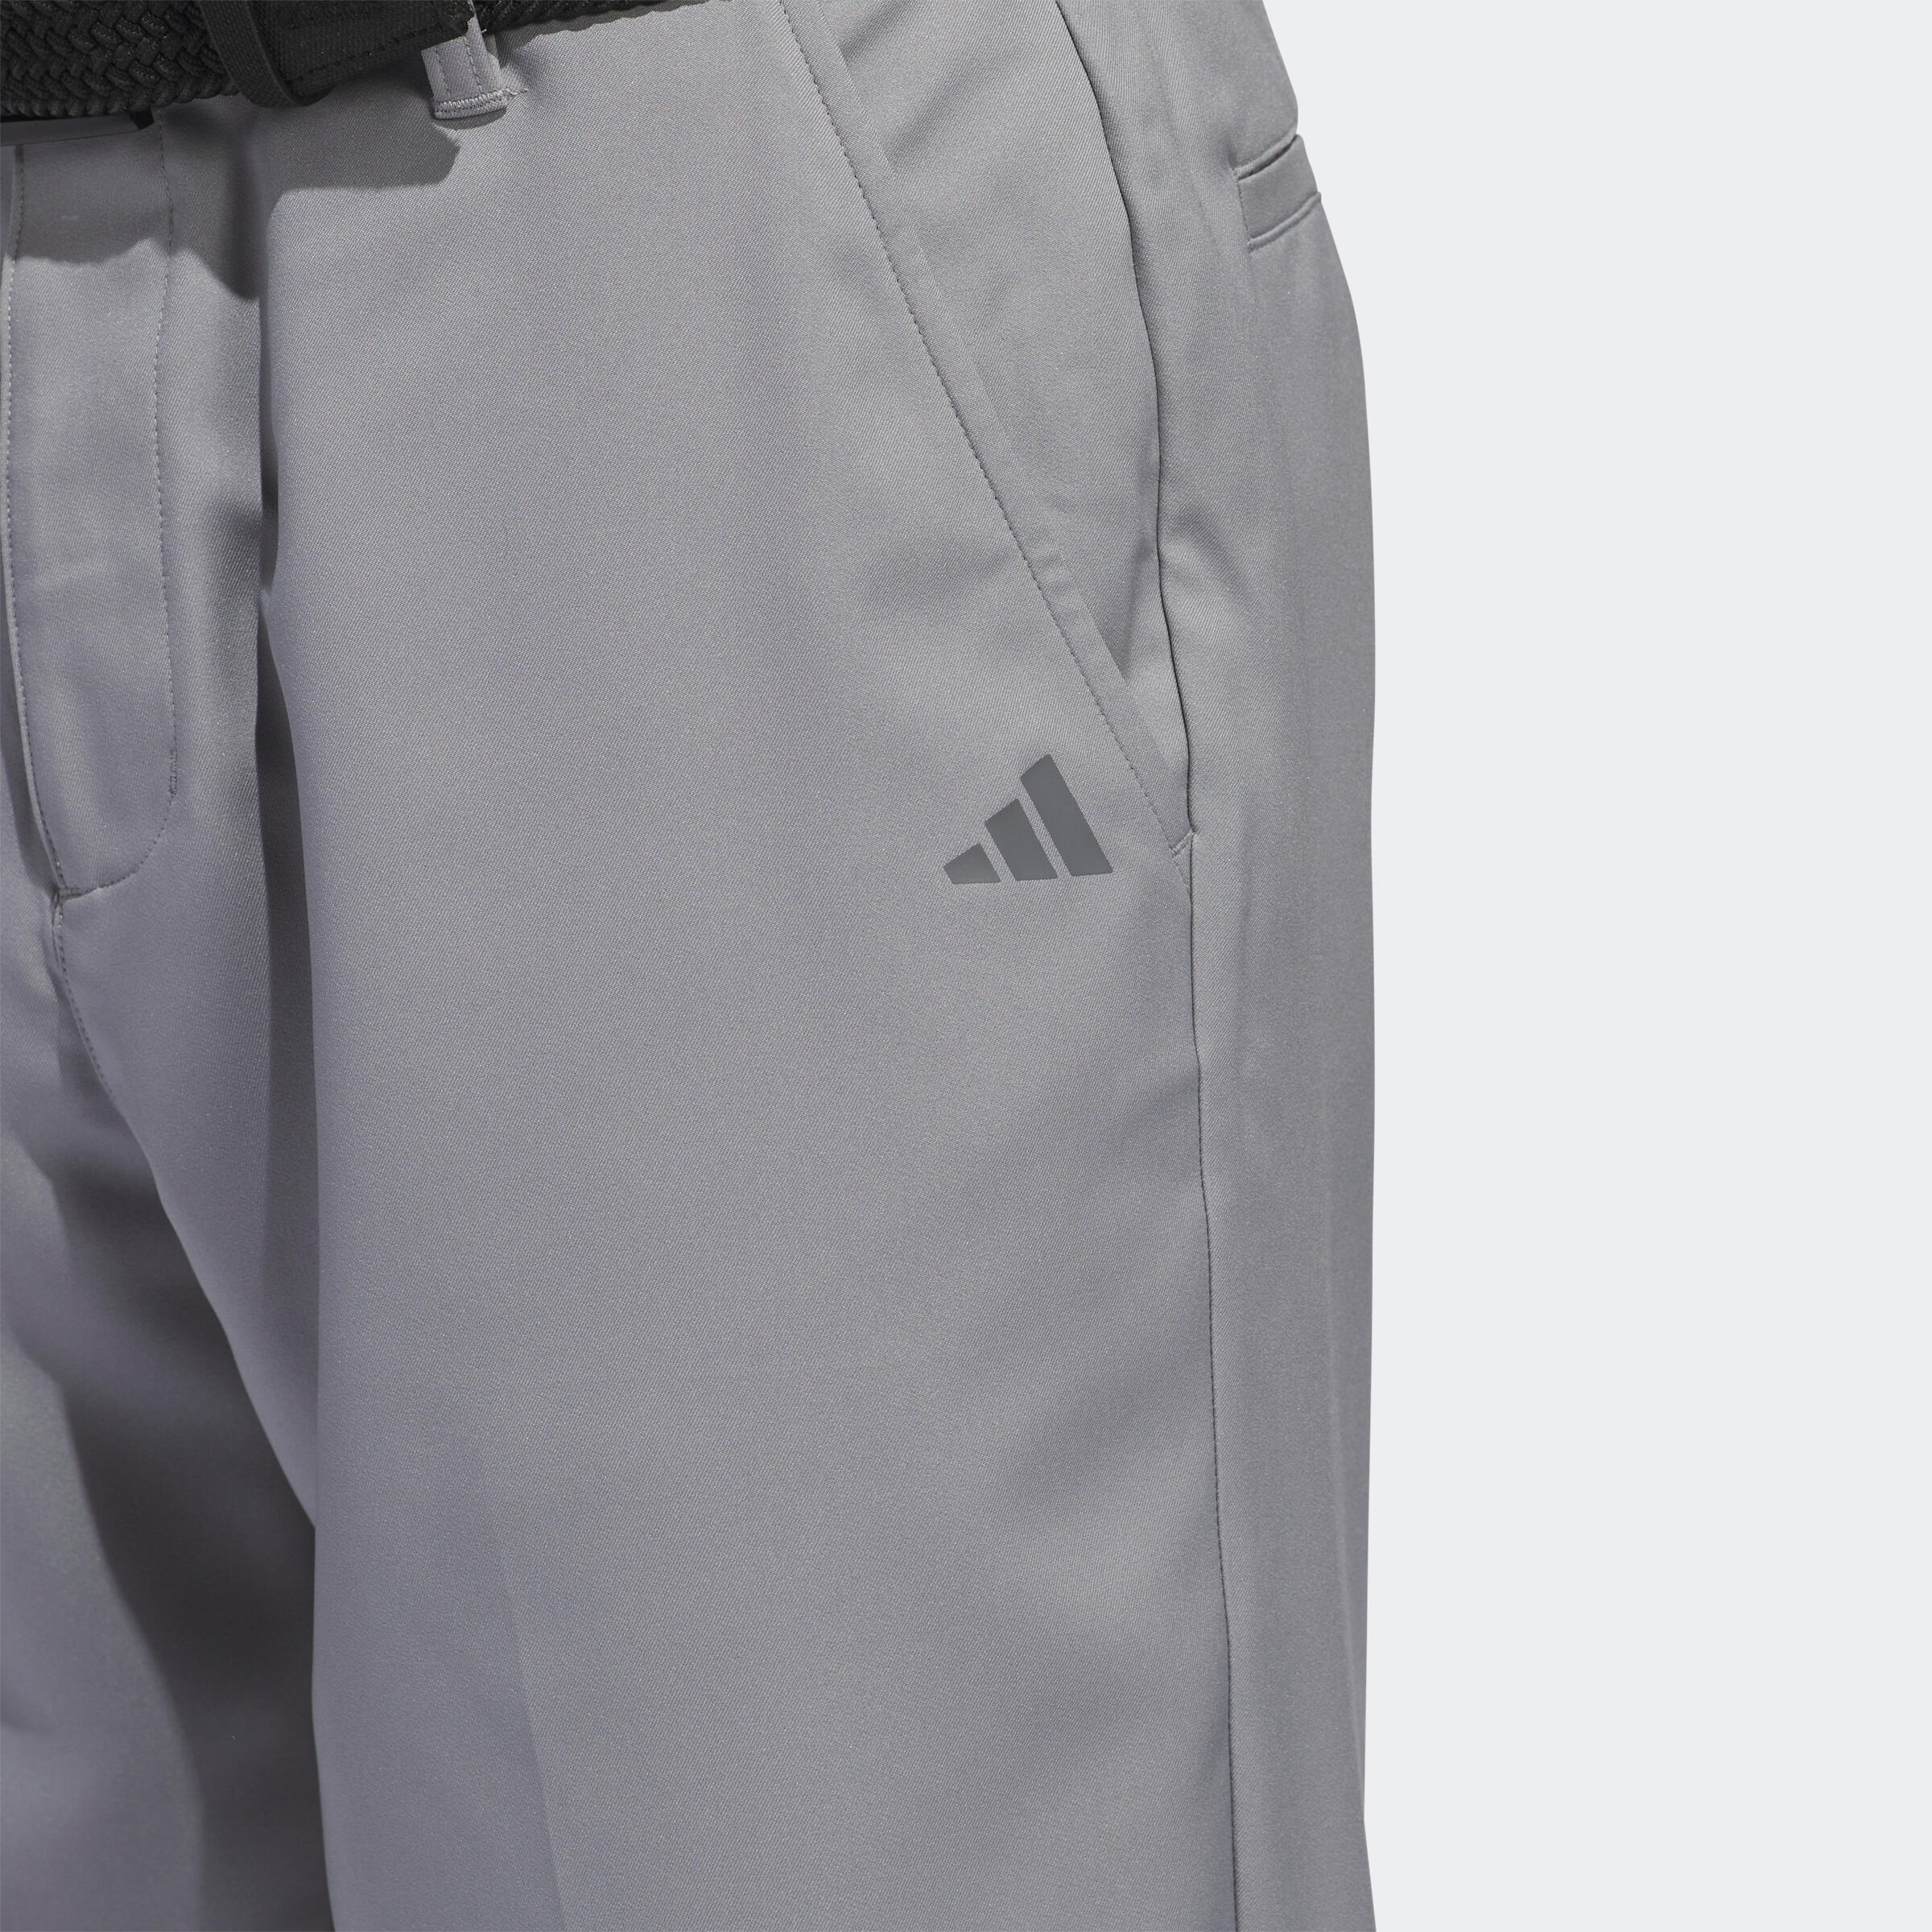 Men's golf Bermuda shorts - Adidas grey 4/5